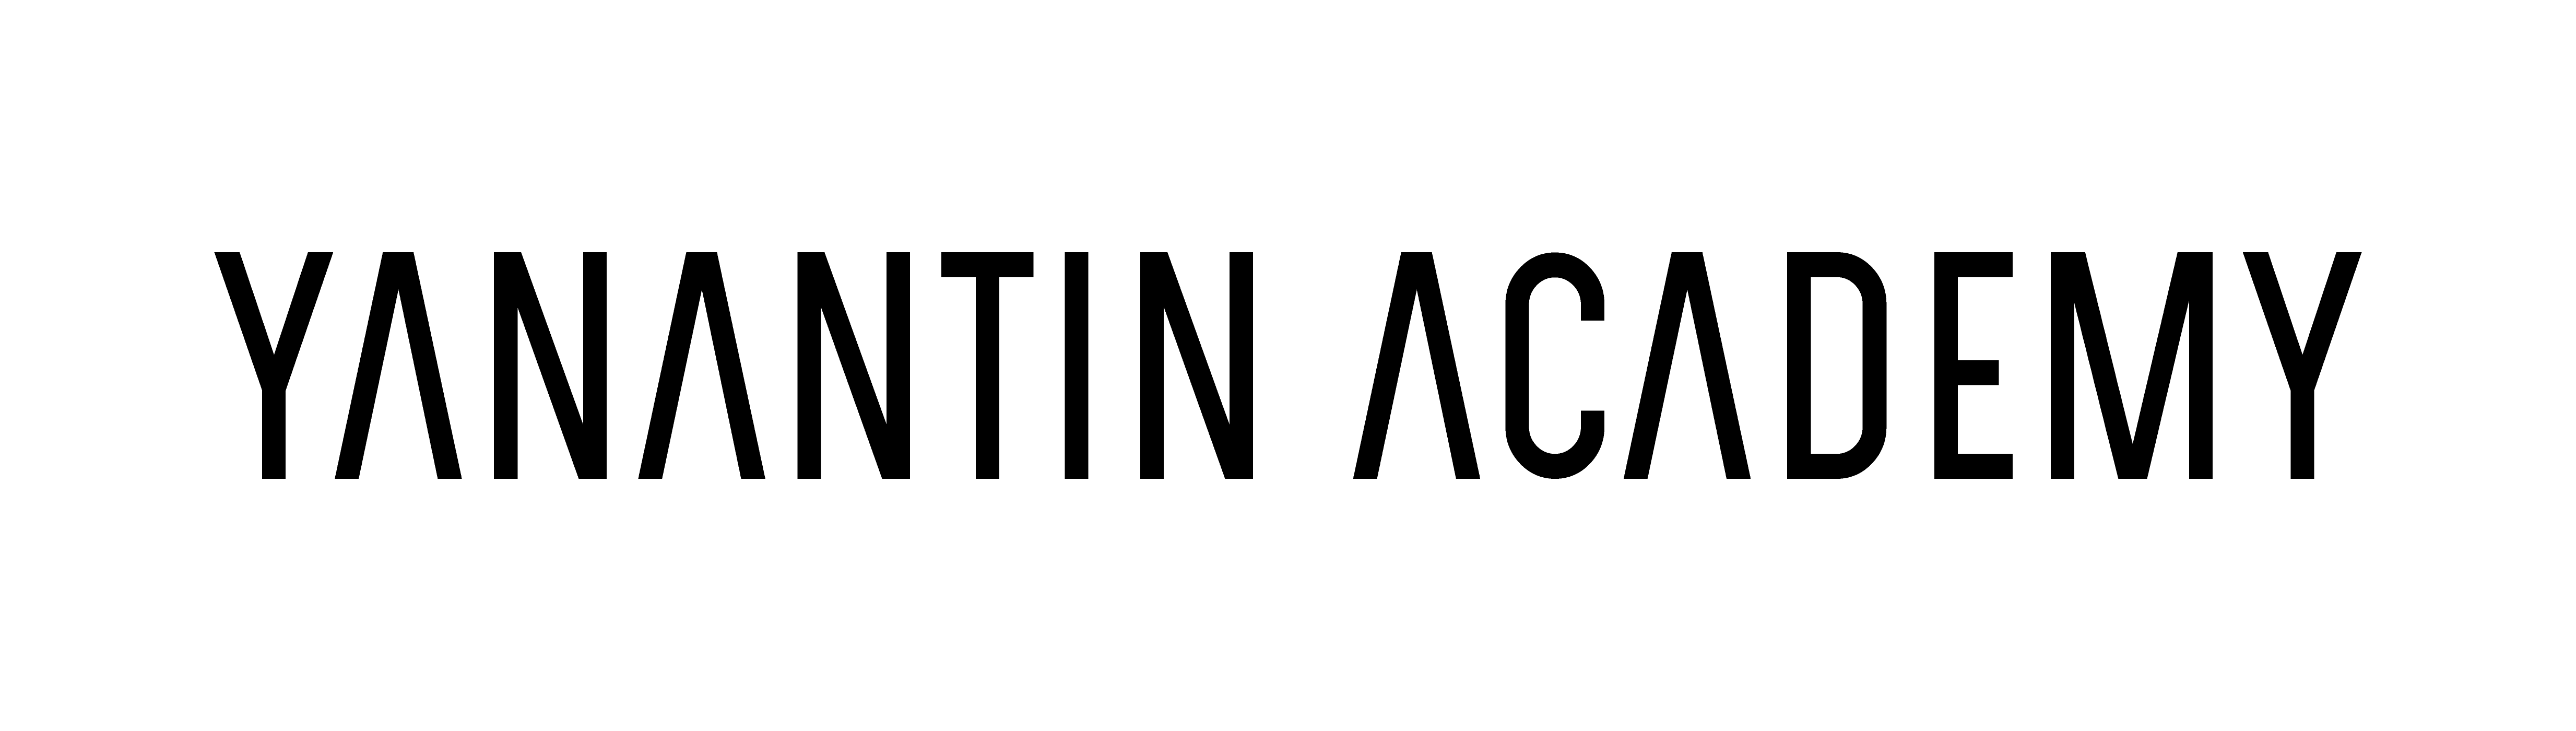 Yanantin Academy logo